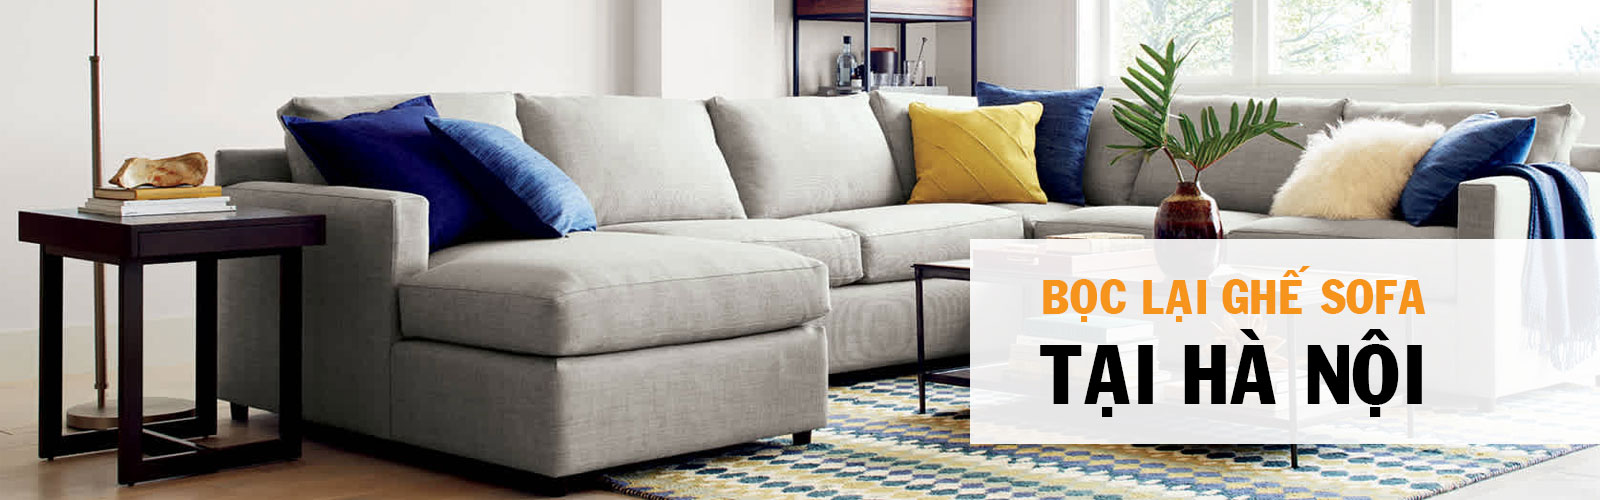 Làm thế nào để làm sạch và bảo dưỡng ghế sofa da thật của bạn và bọc ghế?